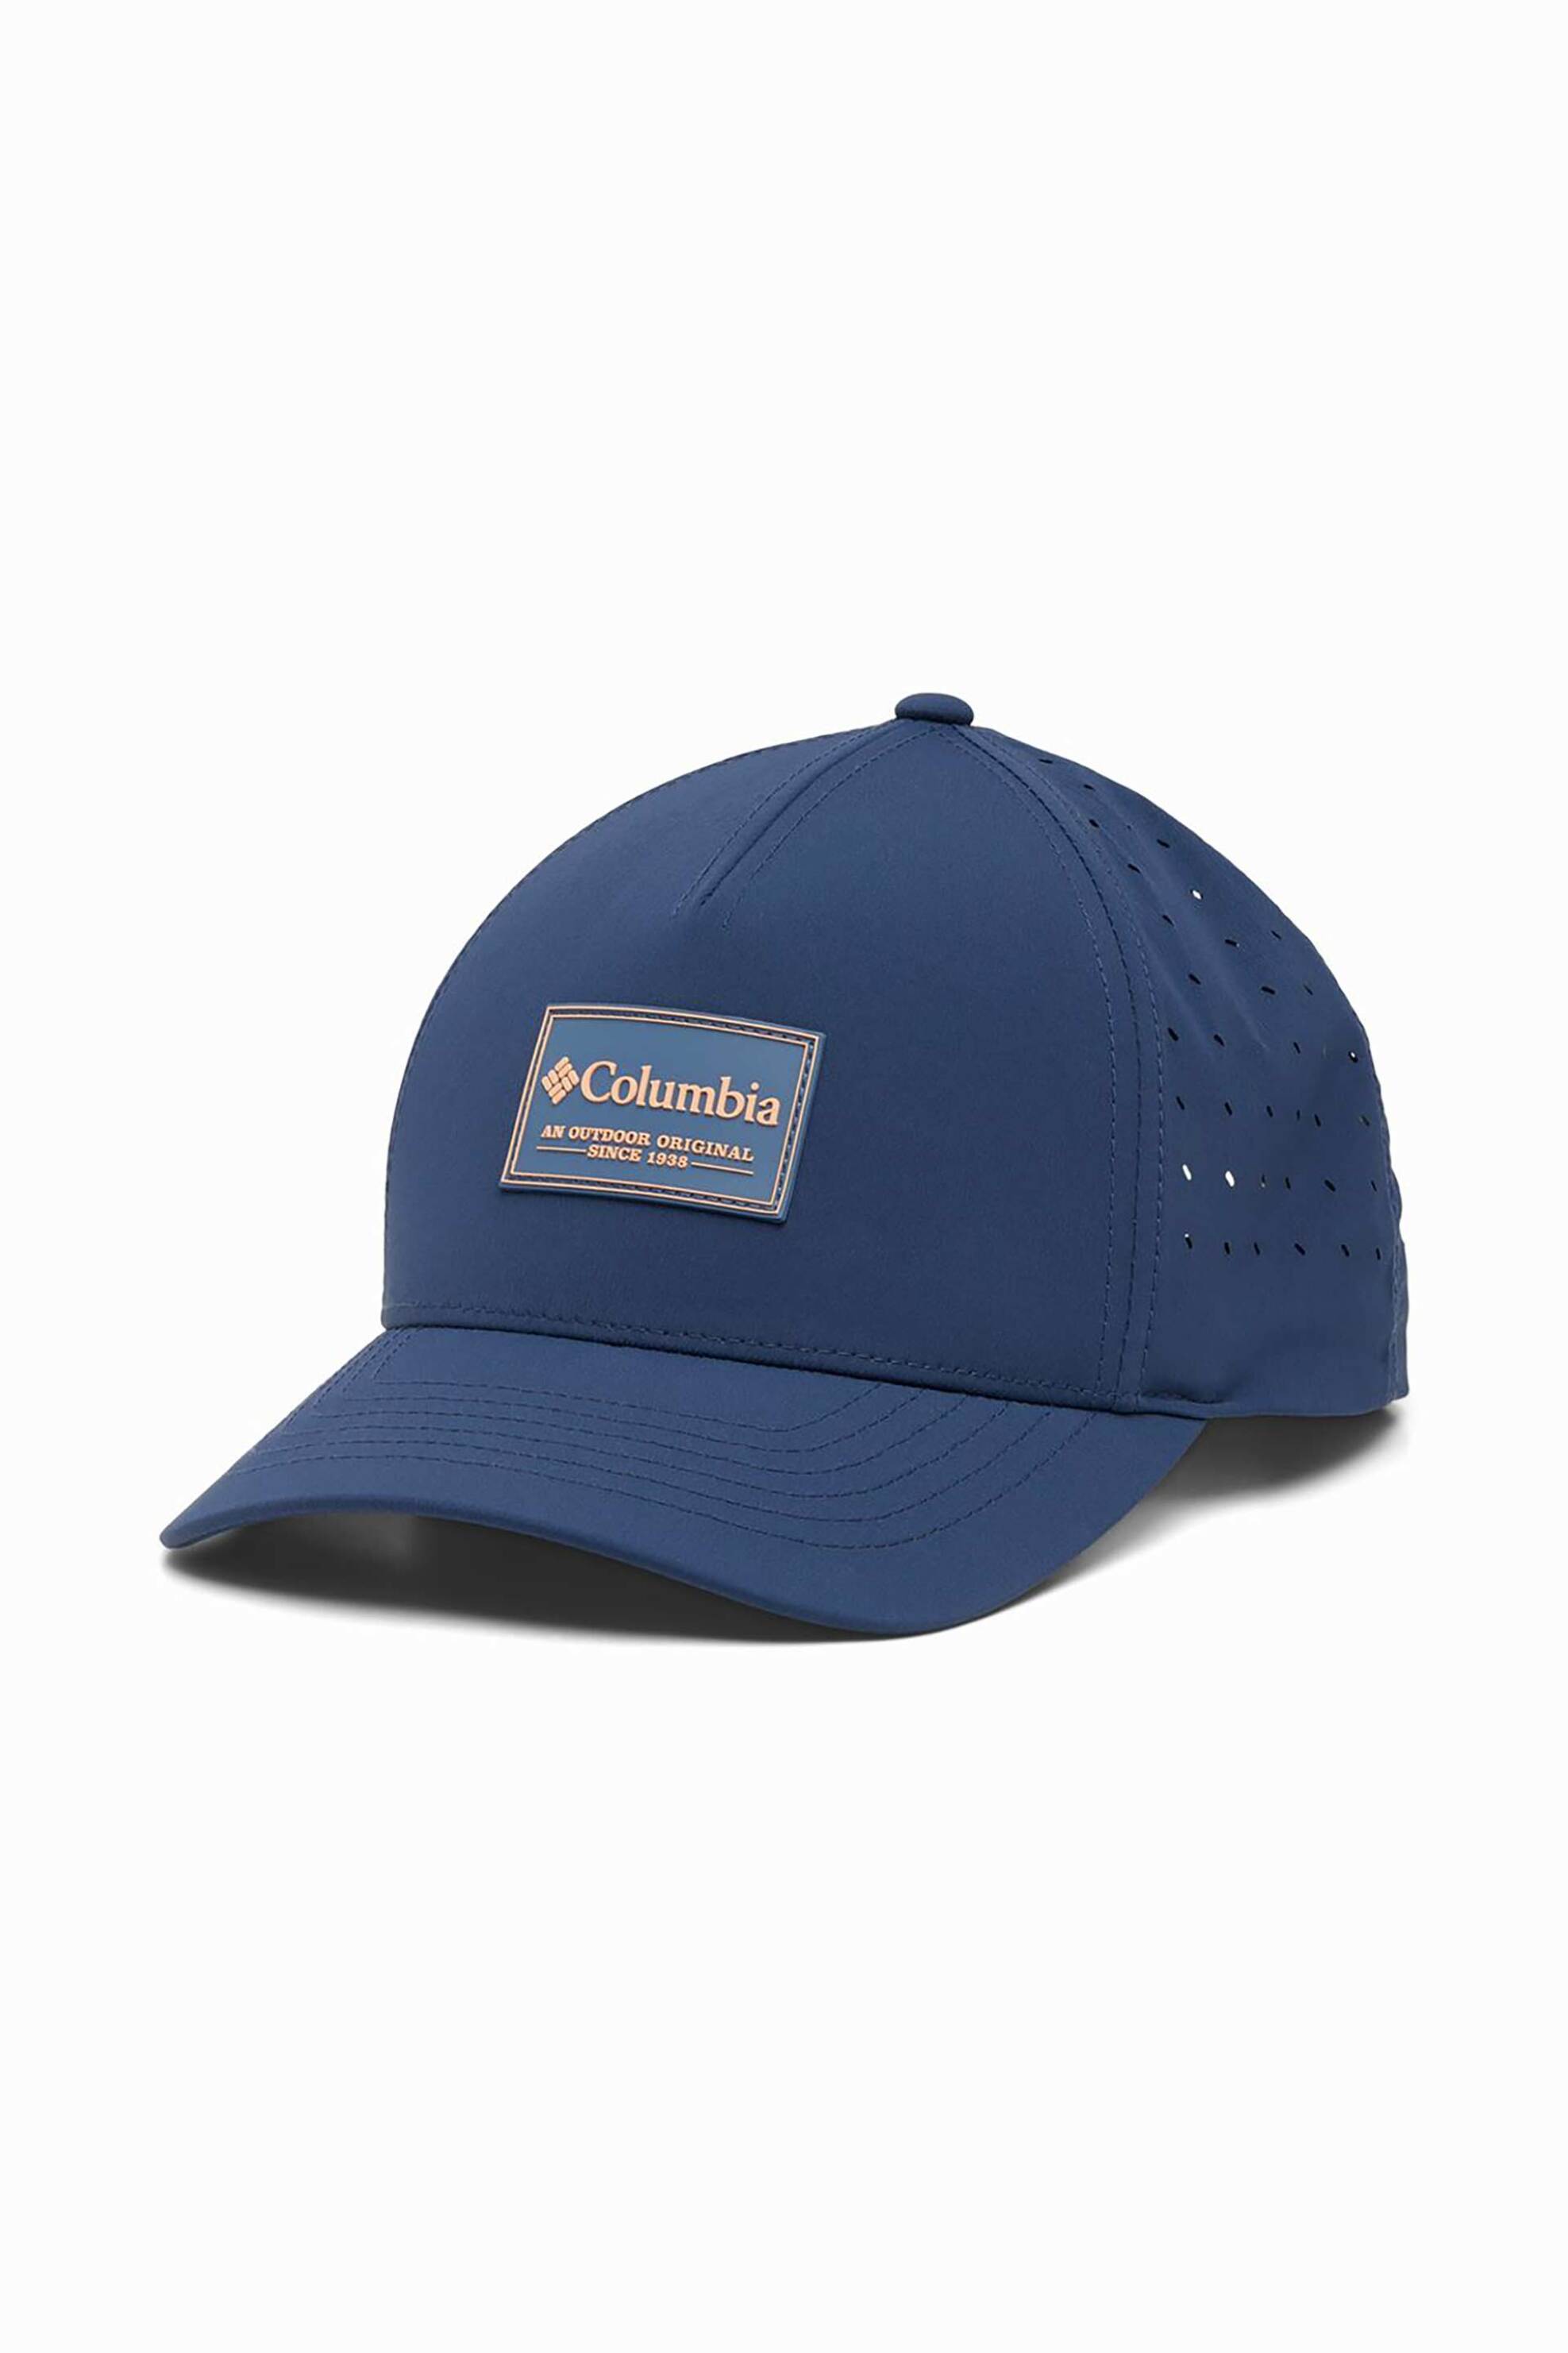 Ανδρική Μόδα > Ανδρικά Αξεσουάρ > Ανδρικά Καπέλα & Σκούφοι Columbia unisex καπέλο μονόχρωμο με διάτρητο σχέδιο "Columbia Hike™ 110" - 2032031465TEM Μπλε